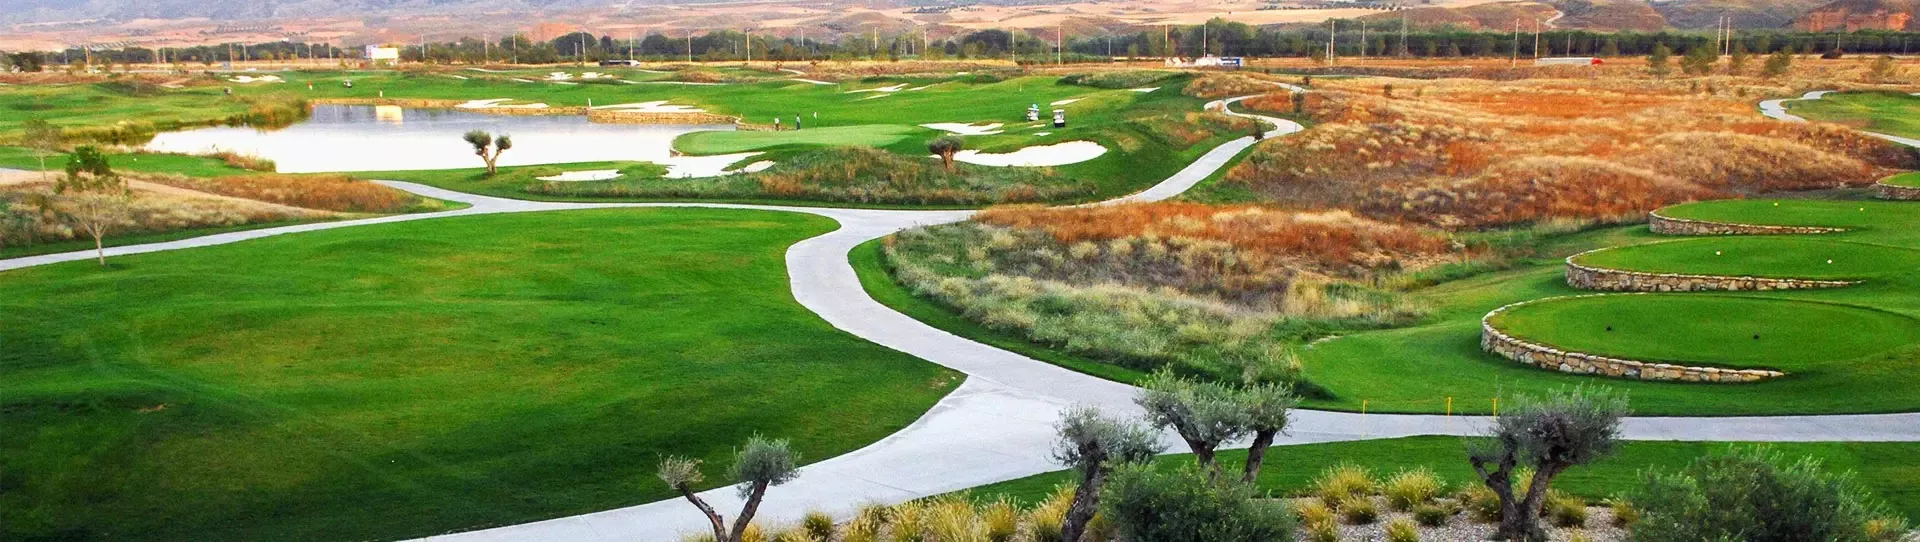 Spain golf courses - El Encin Golf Course - Photo 3